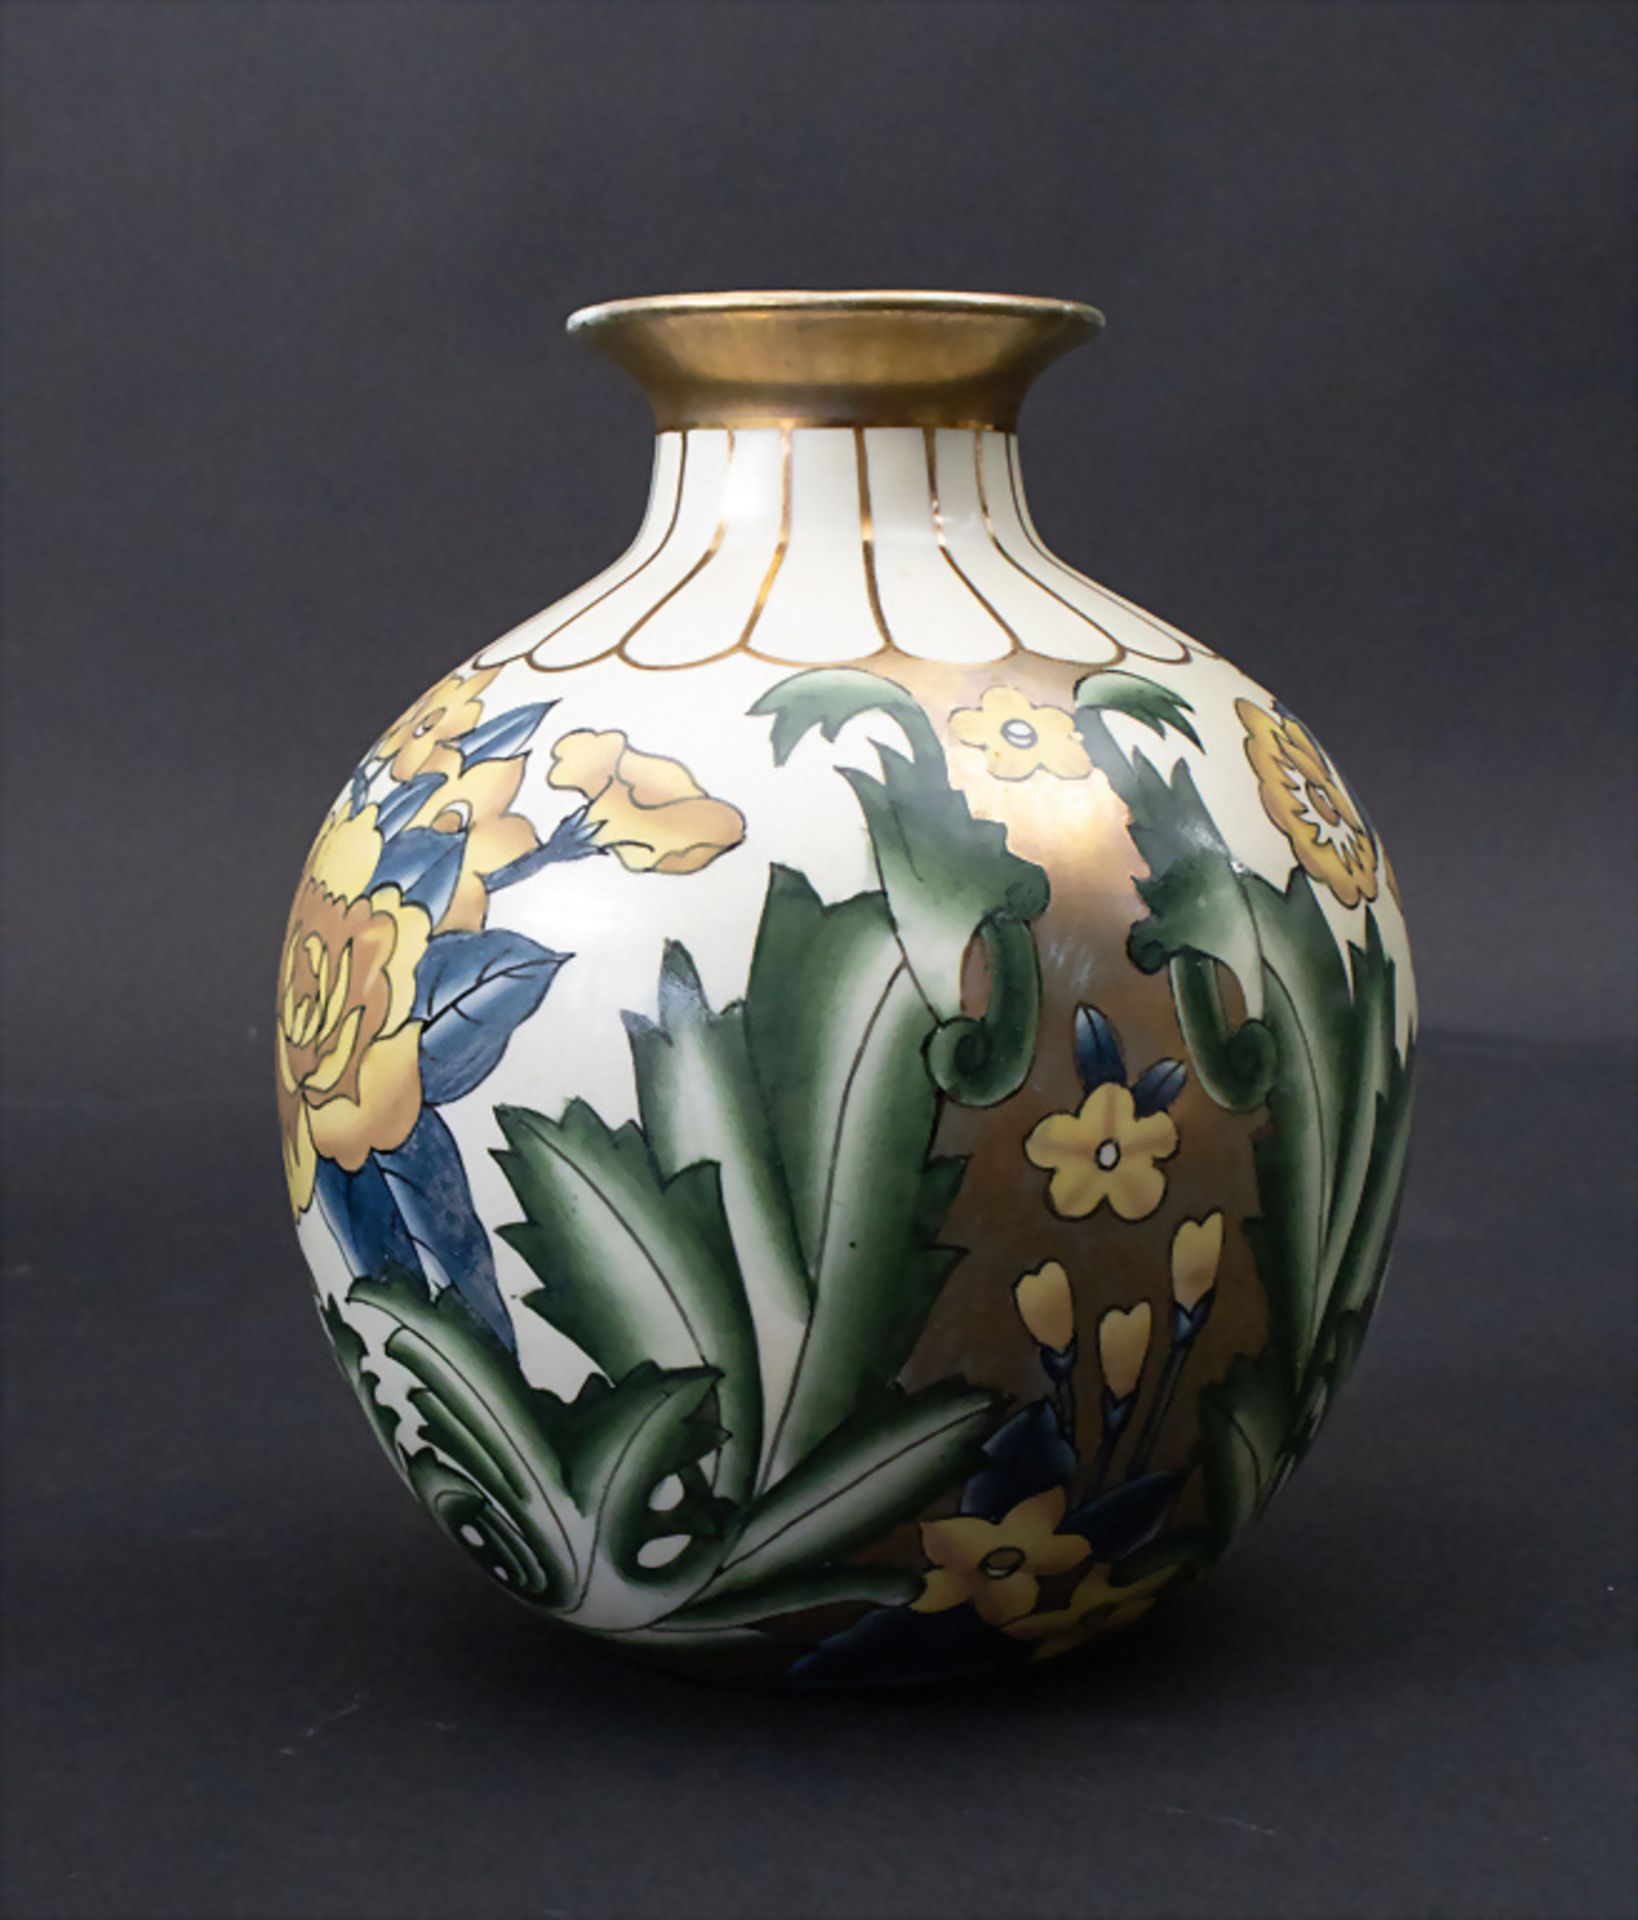 Porzellan Ziervase / A decorative porcelain vase, G. Fieravino, Italien, 20. Jh. - Bild 2 aus 5